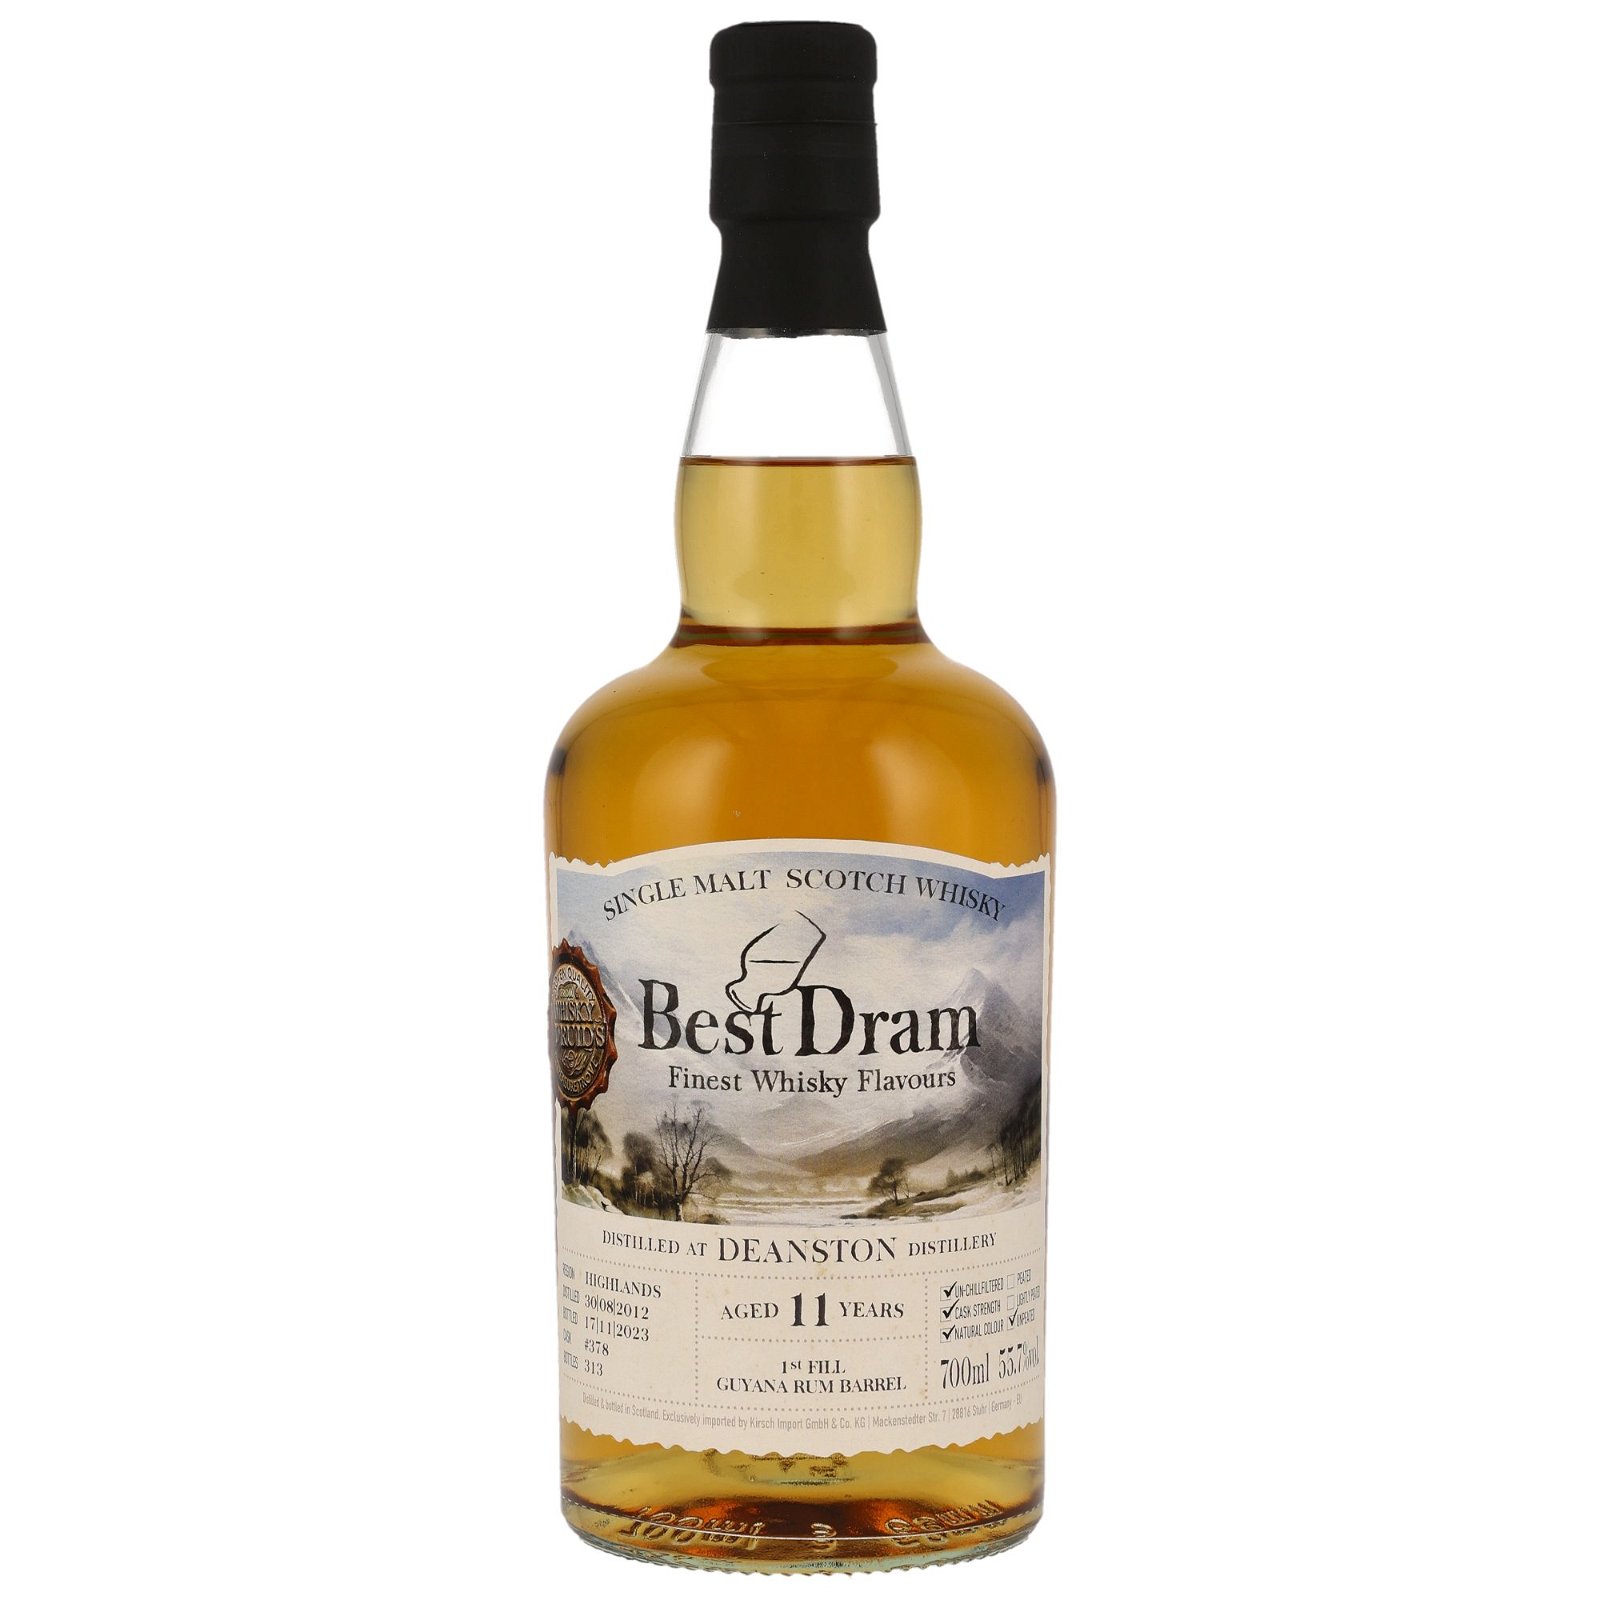 Deanston 2012/2023 - 11 Jahre 1st Fill Guyana Rum Barrel No. 378 (Best Dram)